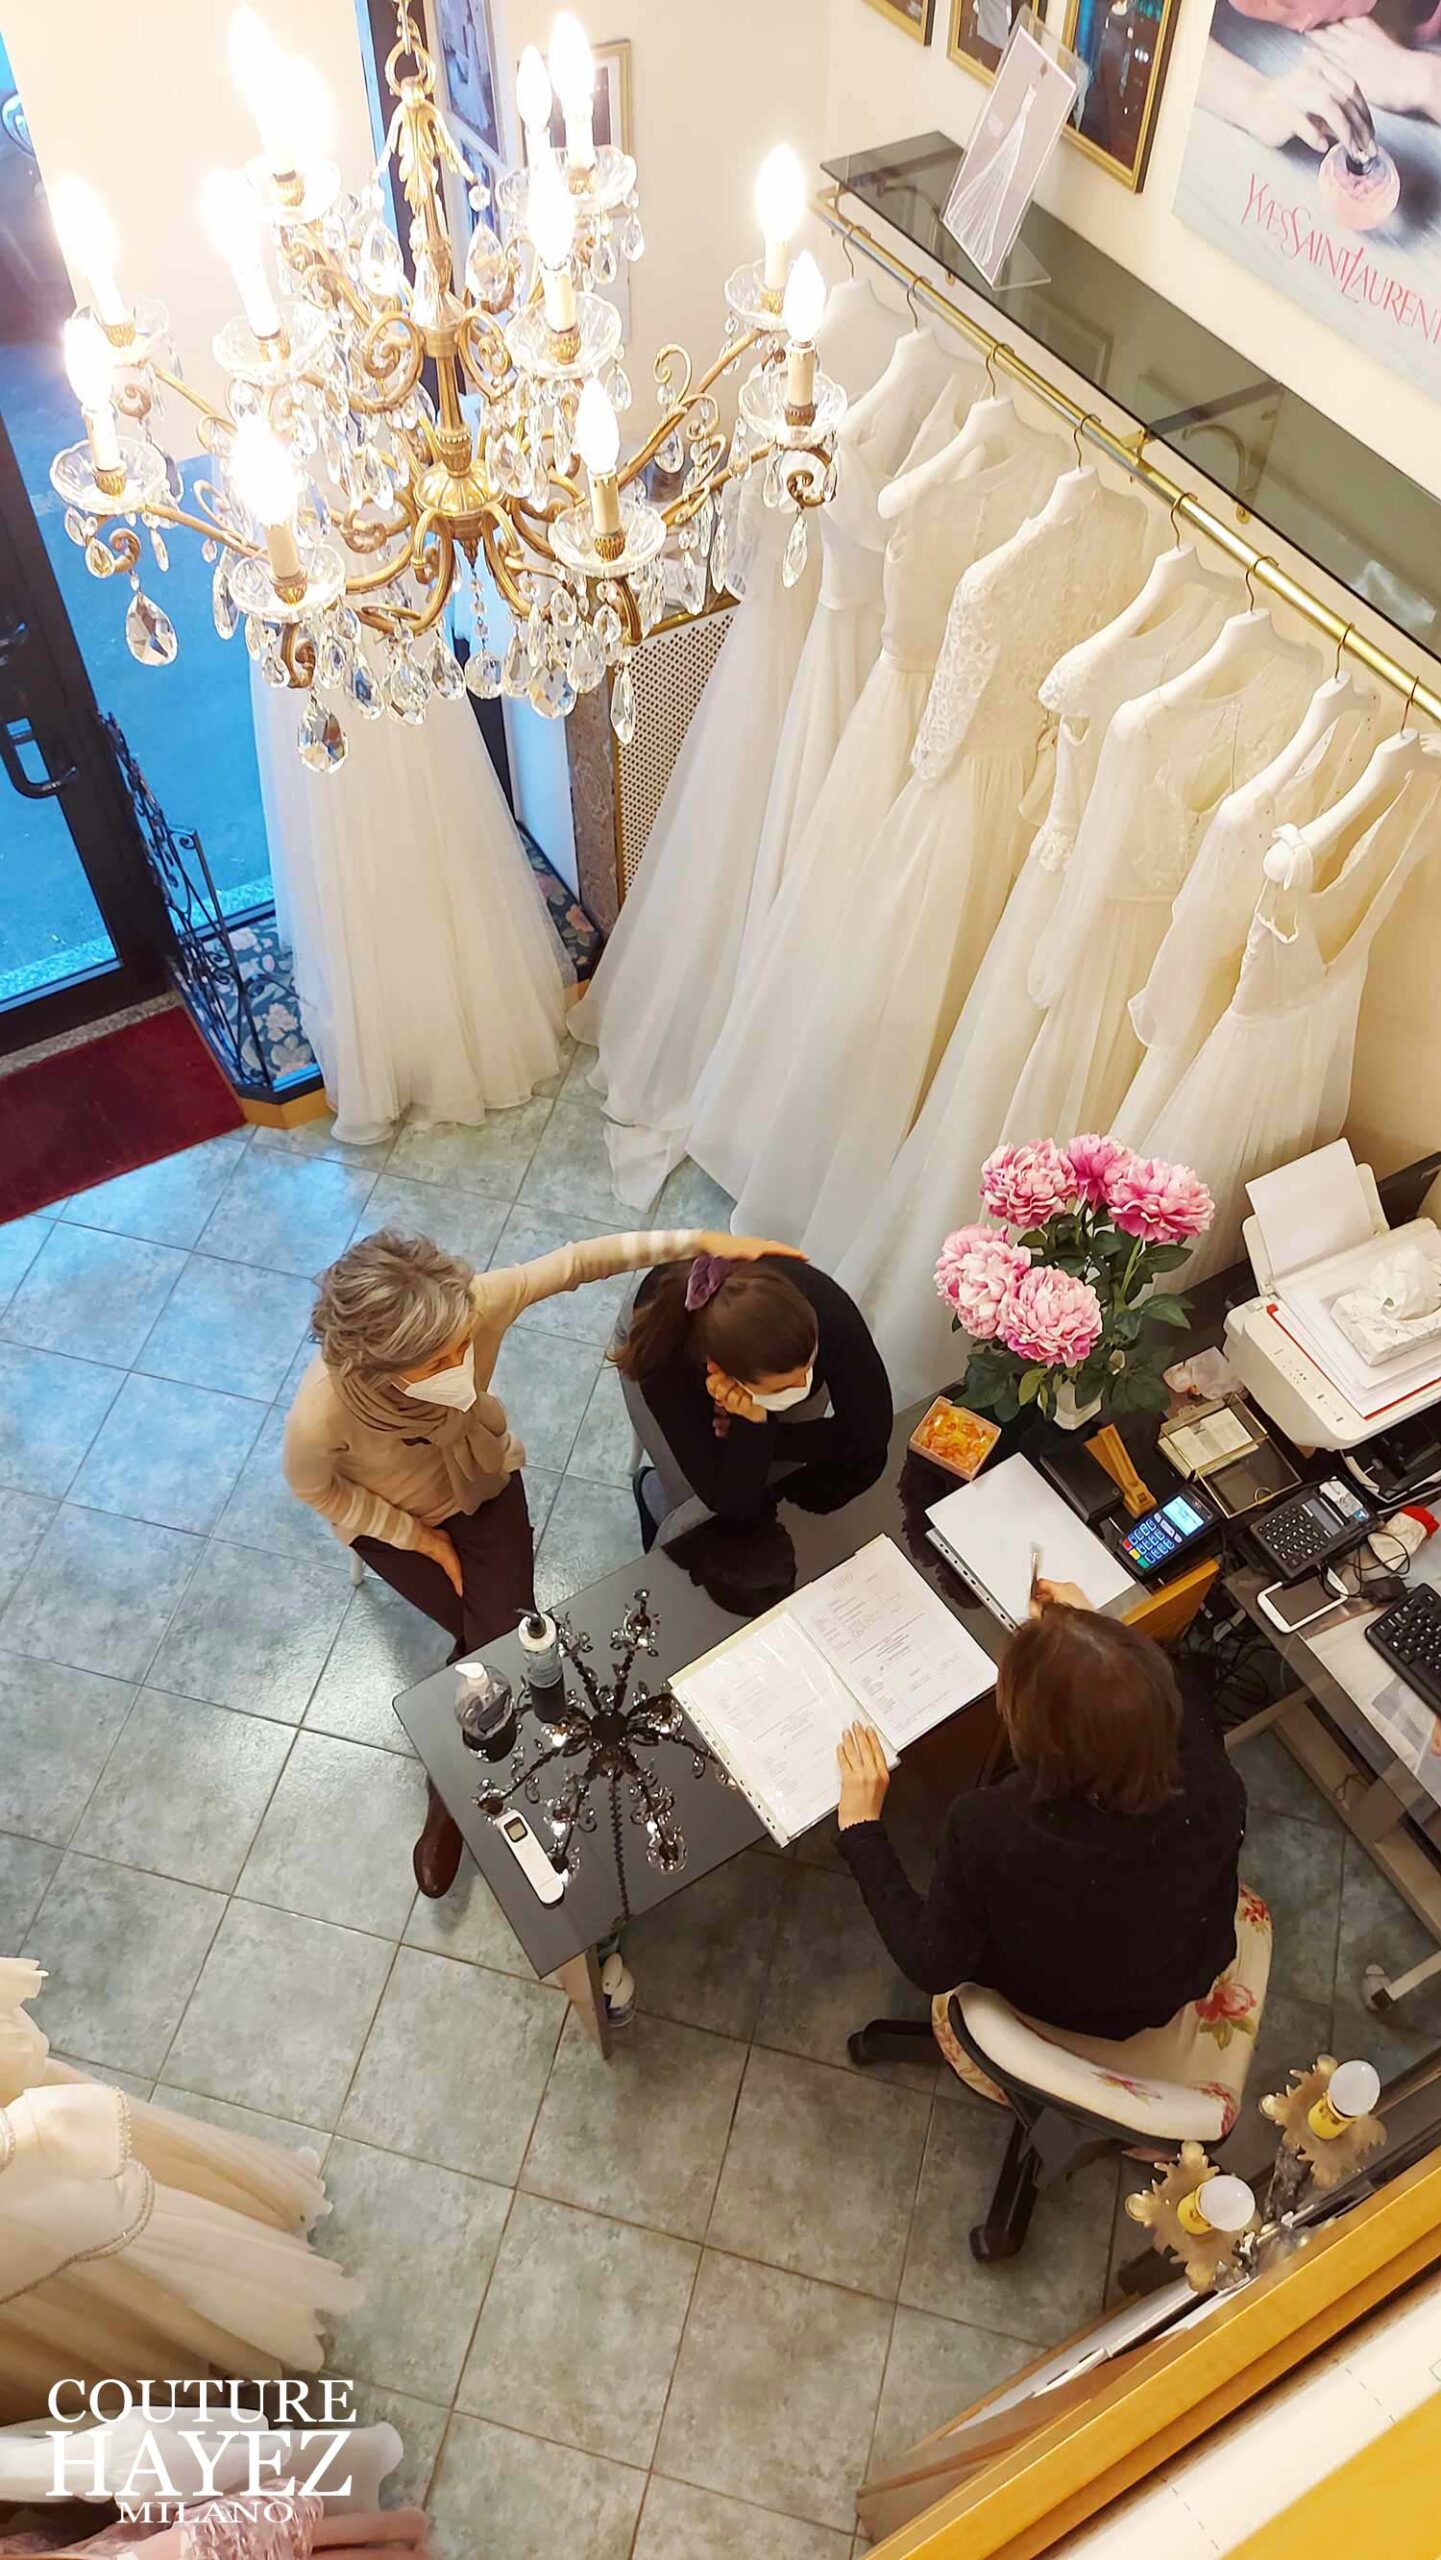 esperienza sartoriale in atelier sposa, sposa in atelier da couture hayez con mamma per la scelta dell'abito